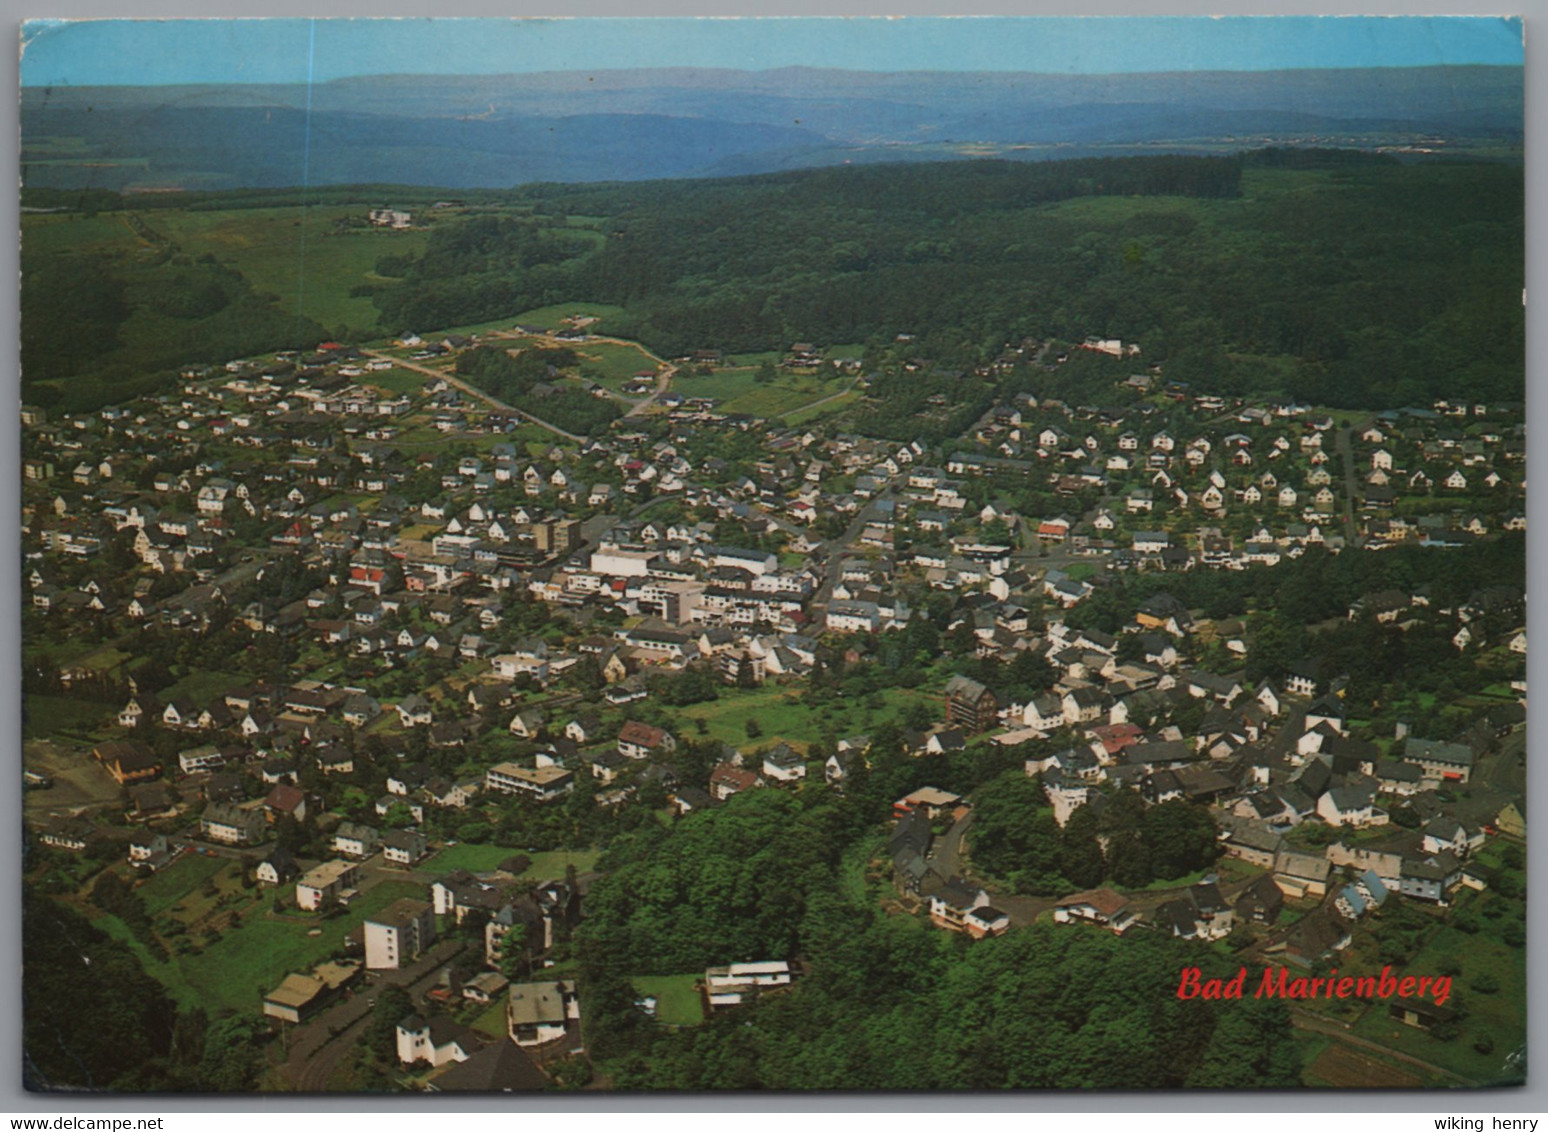 Bad Marienberg - Luftbild 1 - Bad Marienberg